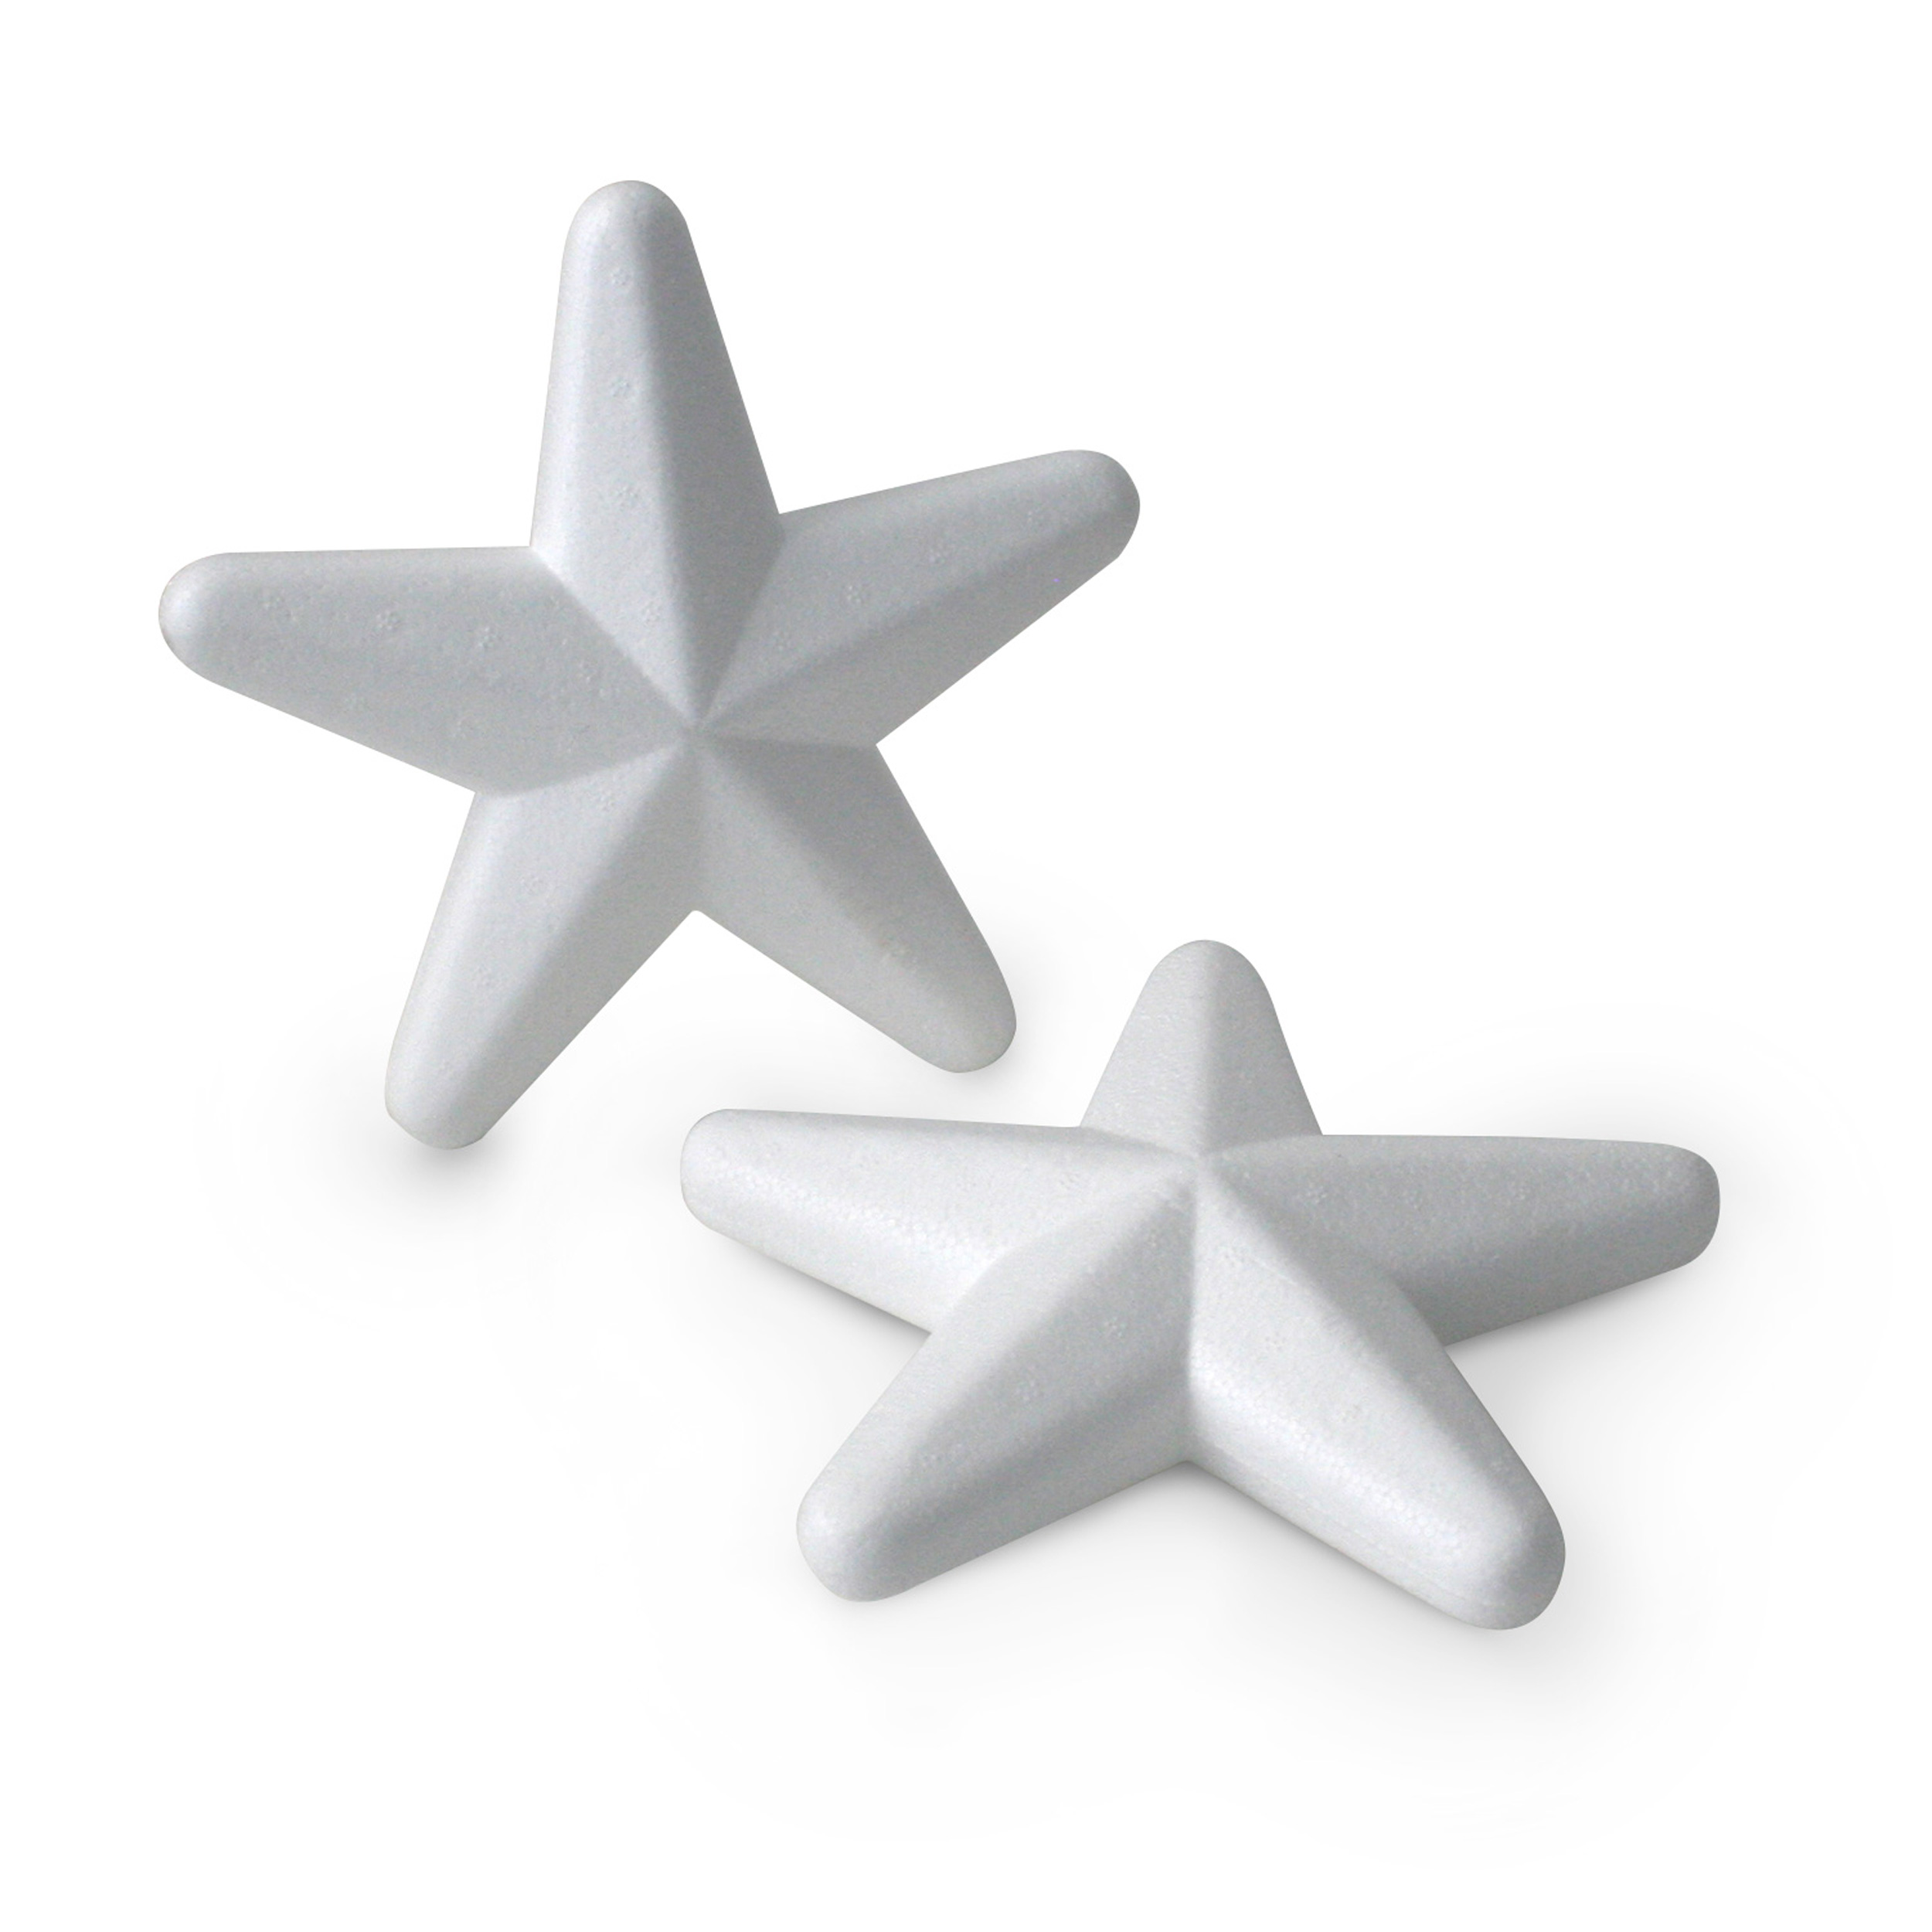 Decosa Styroporstern, weiß, Ø 16 cm, Set besteht aus 2 Sternen